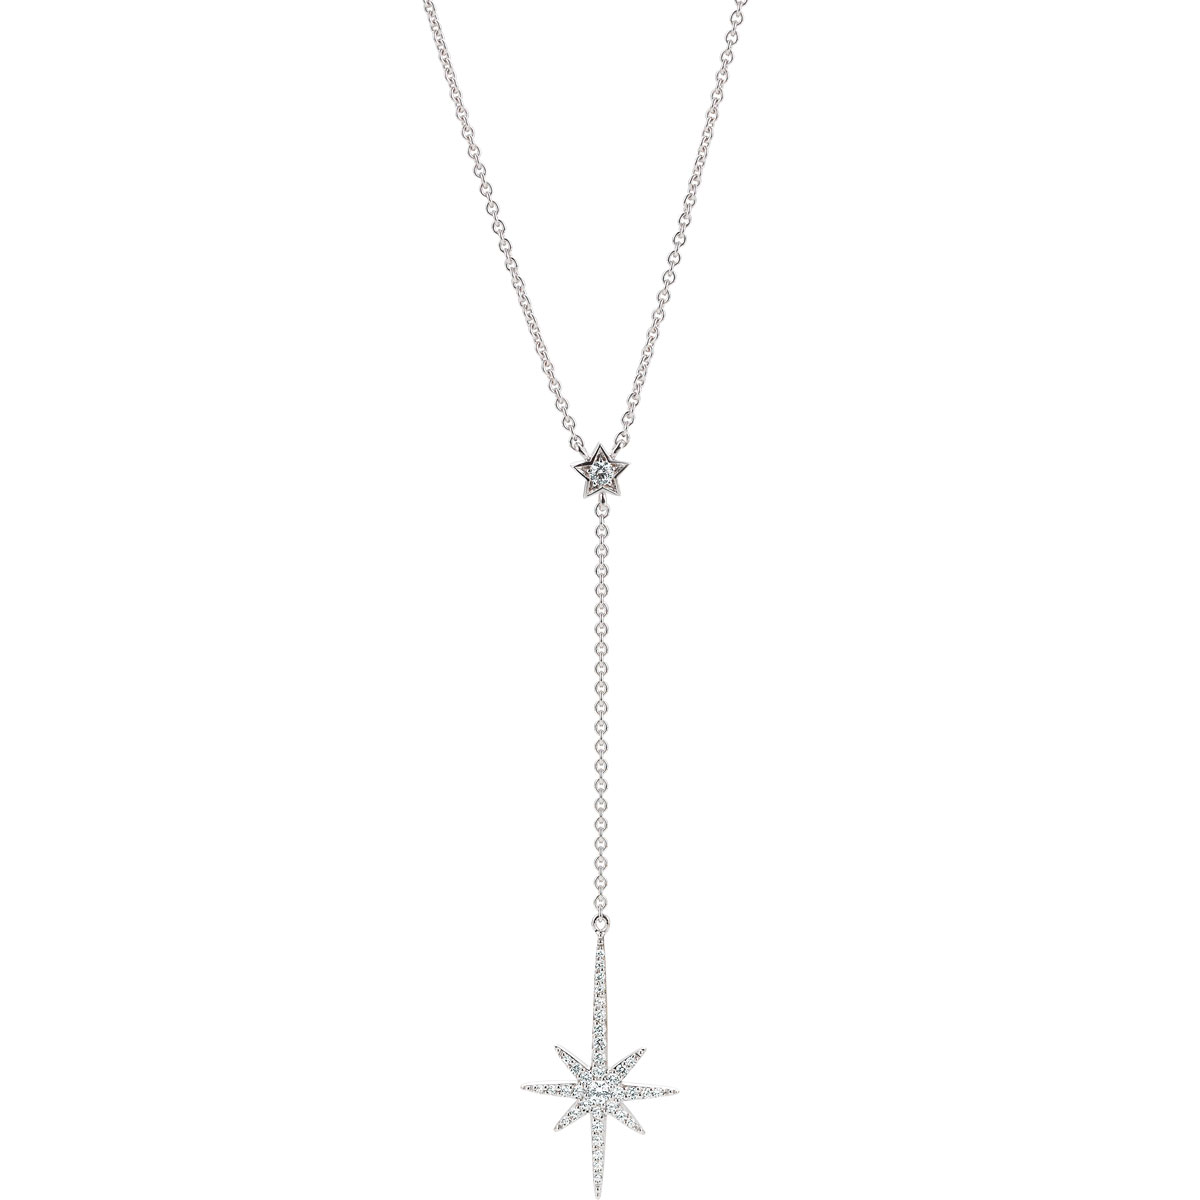 OEM fine necklace silver jewellry with cz in wholesale - custom jewelry ...